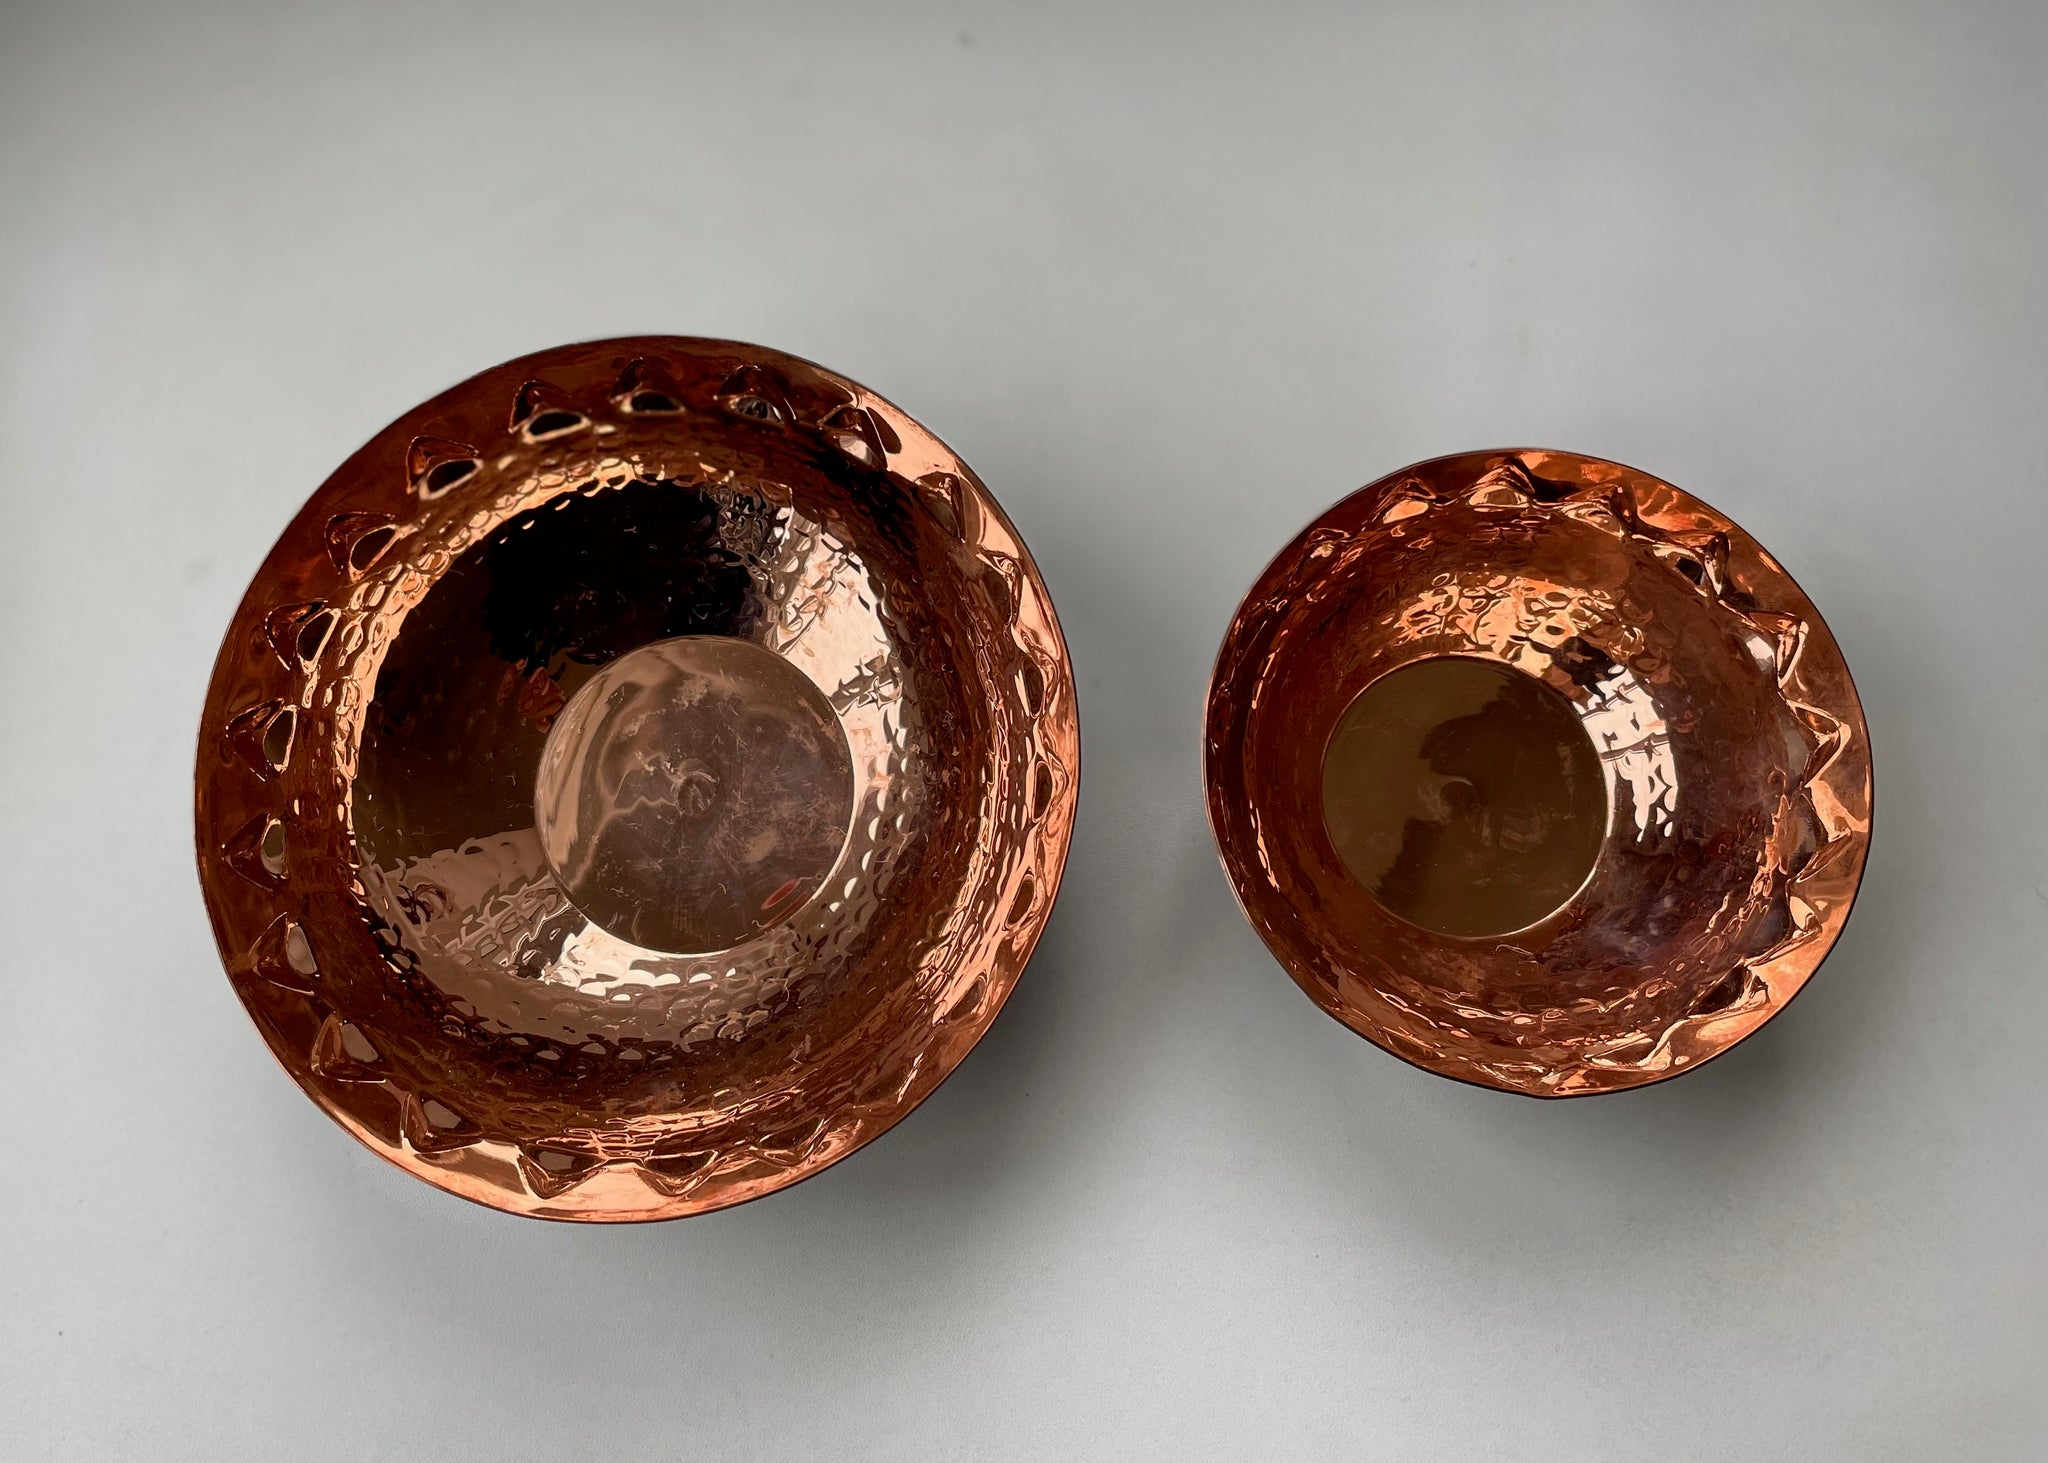 Beaten Brass Bowl - Small